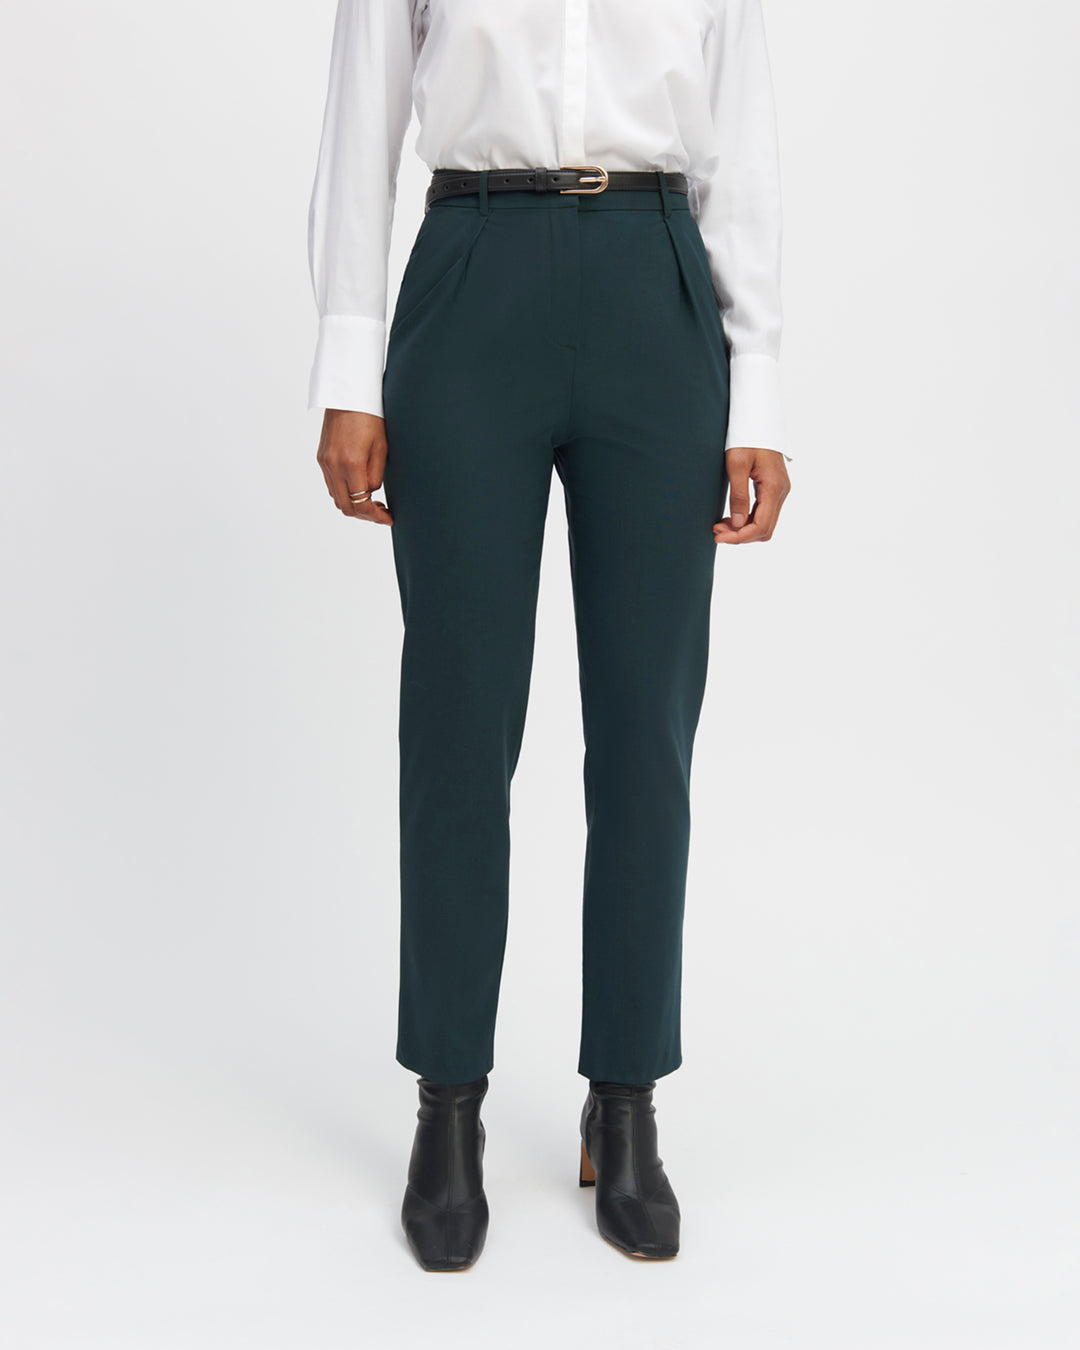 Pantalon-de-tailleur-vert-coupe-7-8eme-taille-haute-plis-sous-la-ceinture-deux-poches-a-l-italienne-ceinture-assortie-ton-sur-ton-17H10-tailleurs-pour-femme-paris-